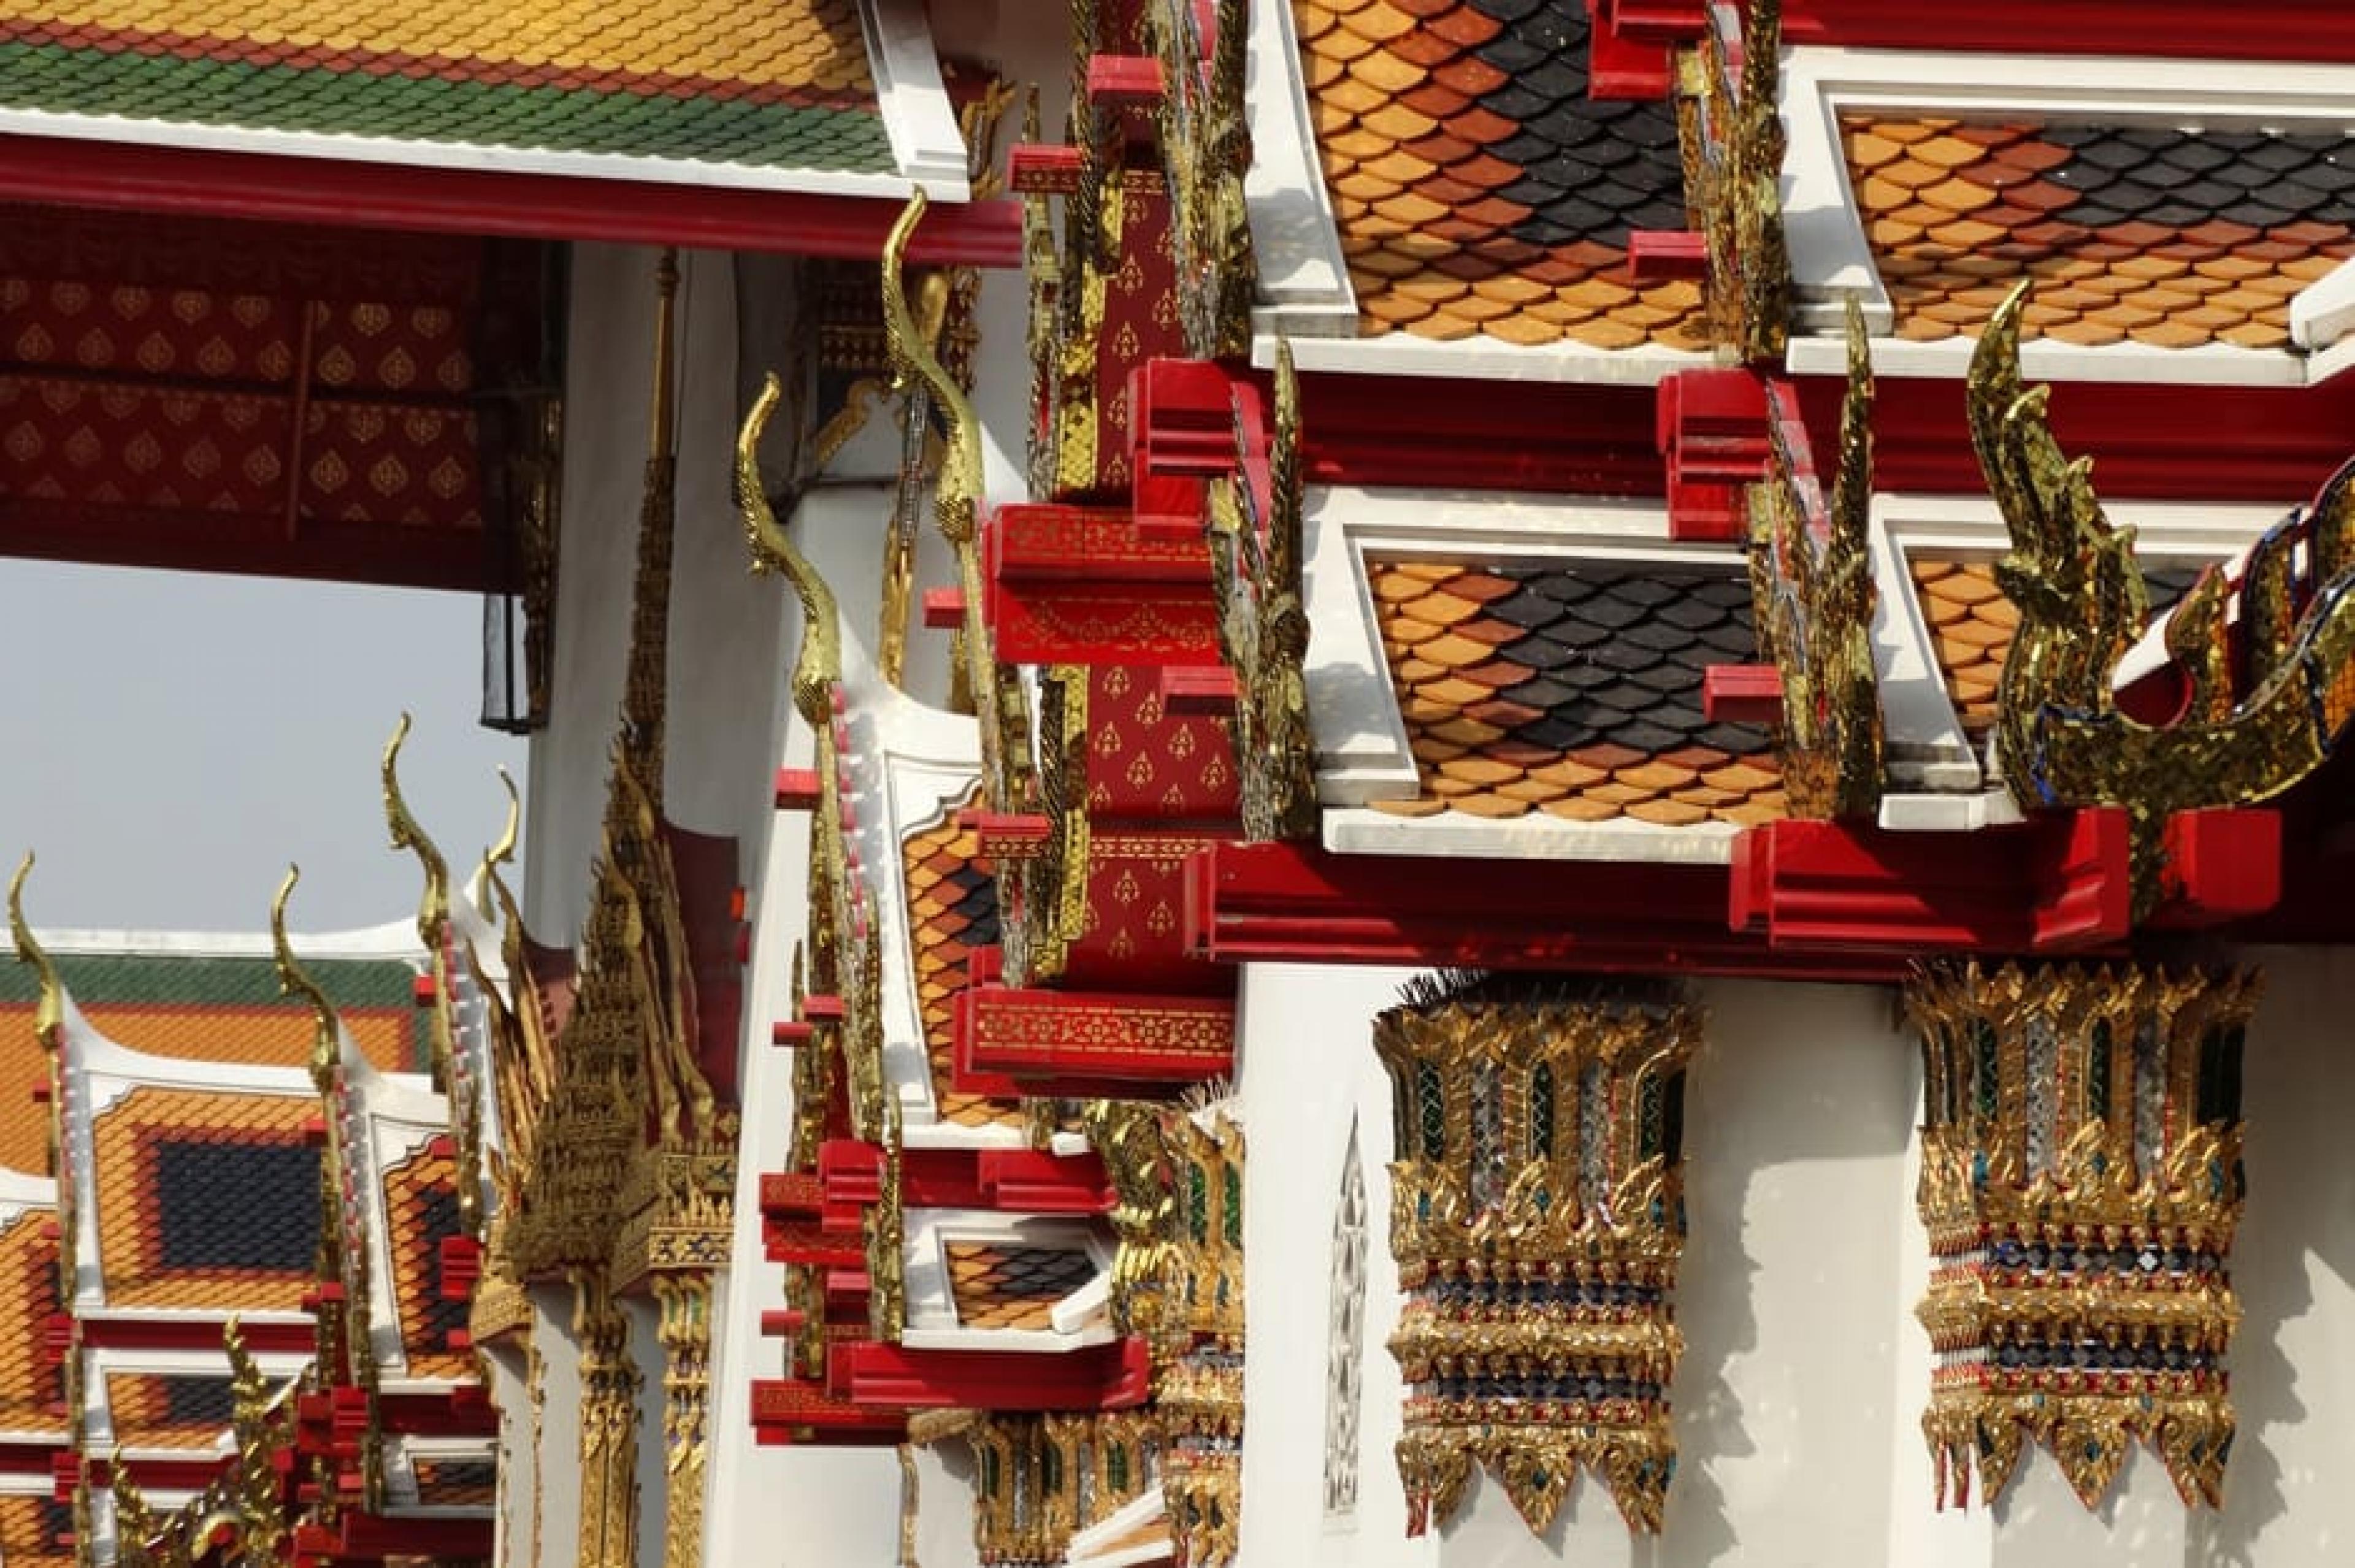 Exterior View - Indagare Tours: Wat Pho,Bangkok, Thailand - Copyright Adam Jones